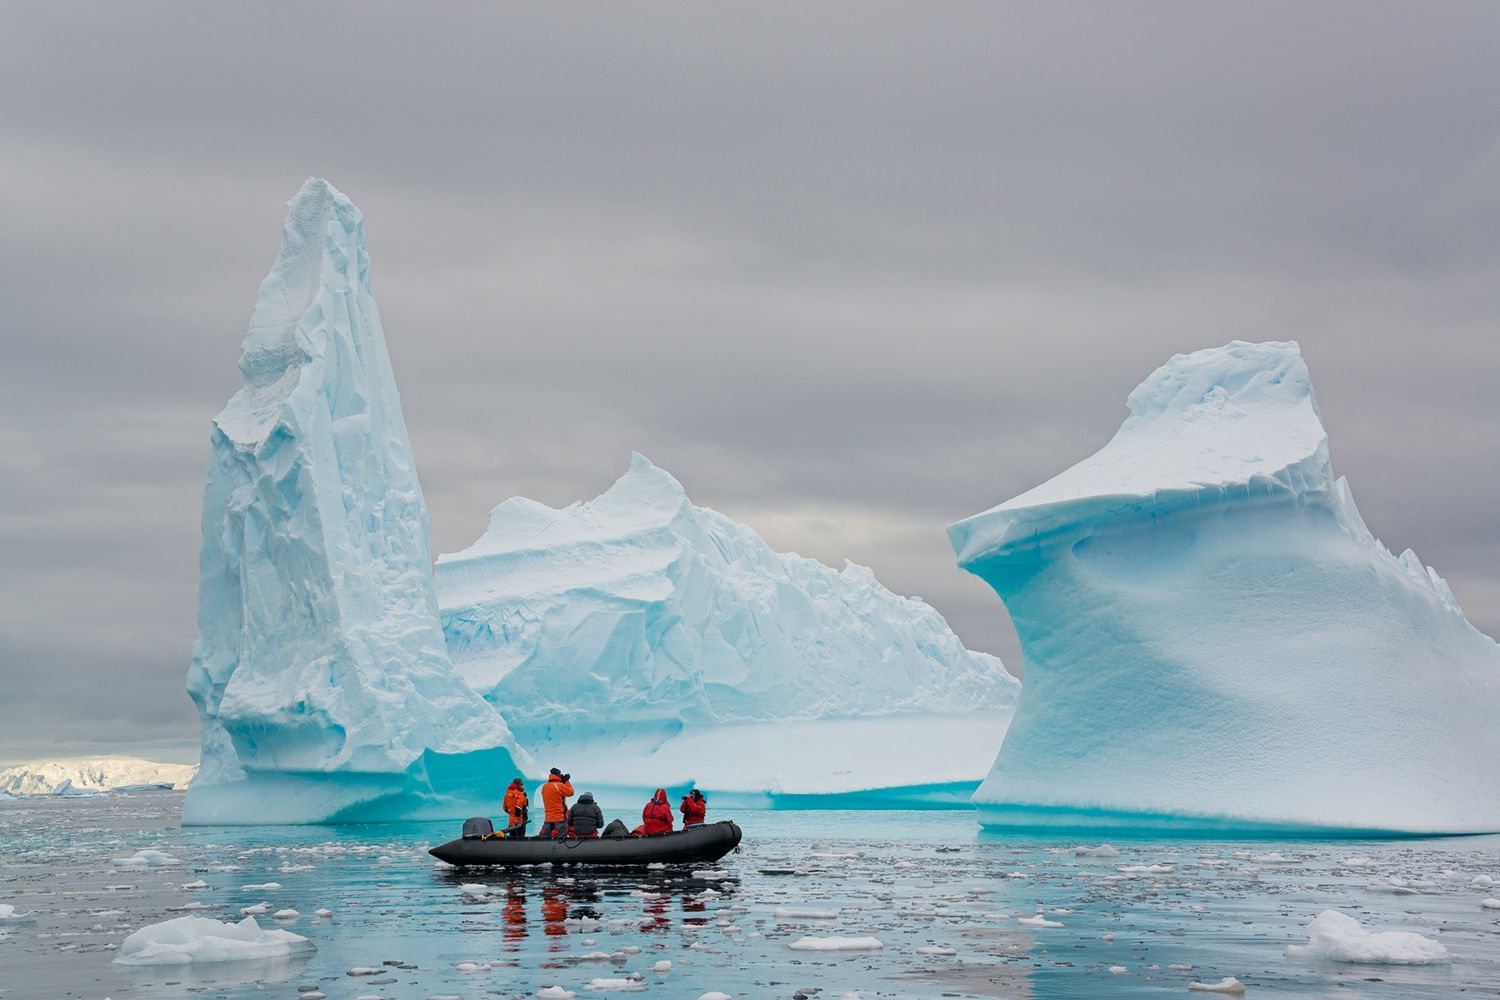 Des gens dans de petits bateaux à côtes gonflables en zodiac passant d'imposants icebergs sculptés sur l'eau calme autour de petites îles de la péninsule antarctique.